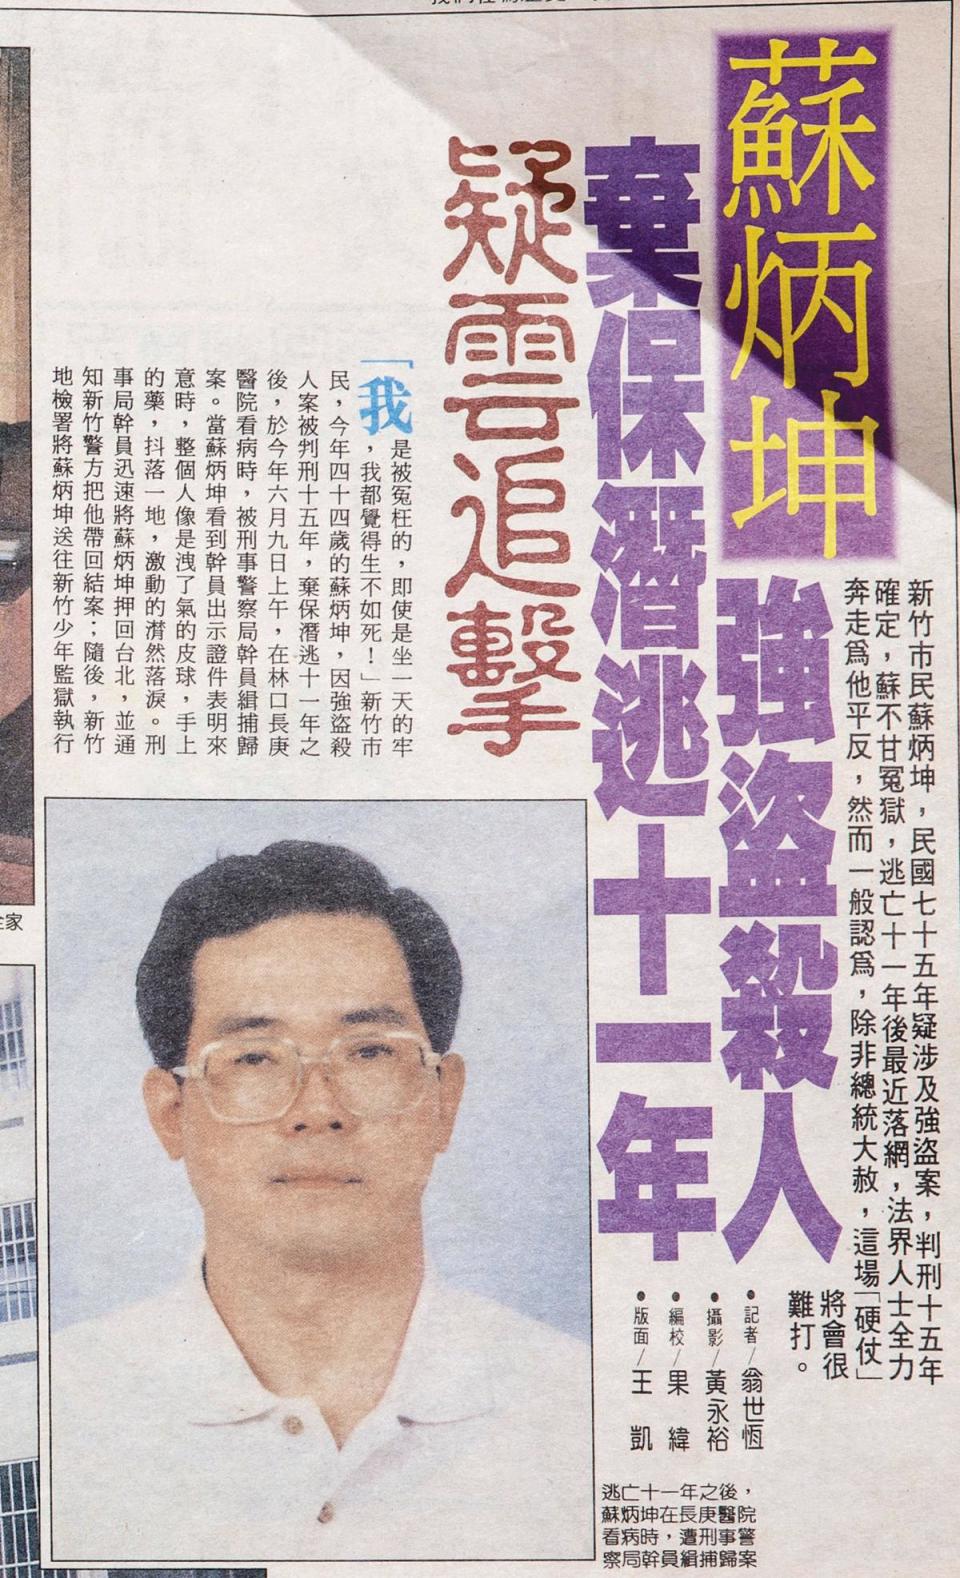 蘇炳坤在1987年三審定讞後開始逃亡，10年後1997年被捕，當時媒體大篇幅報導。（翻攝畫面）